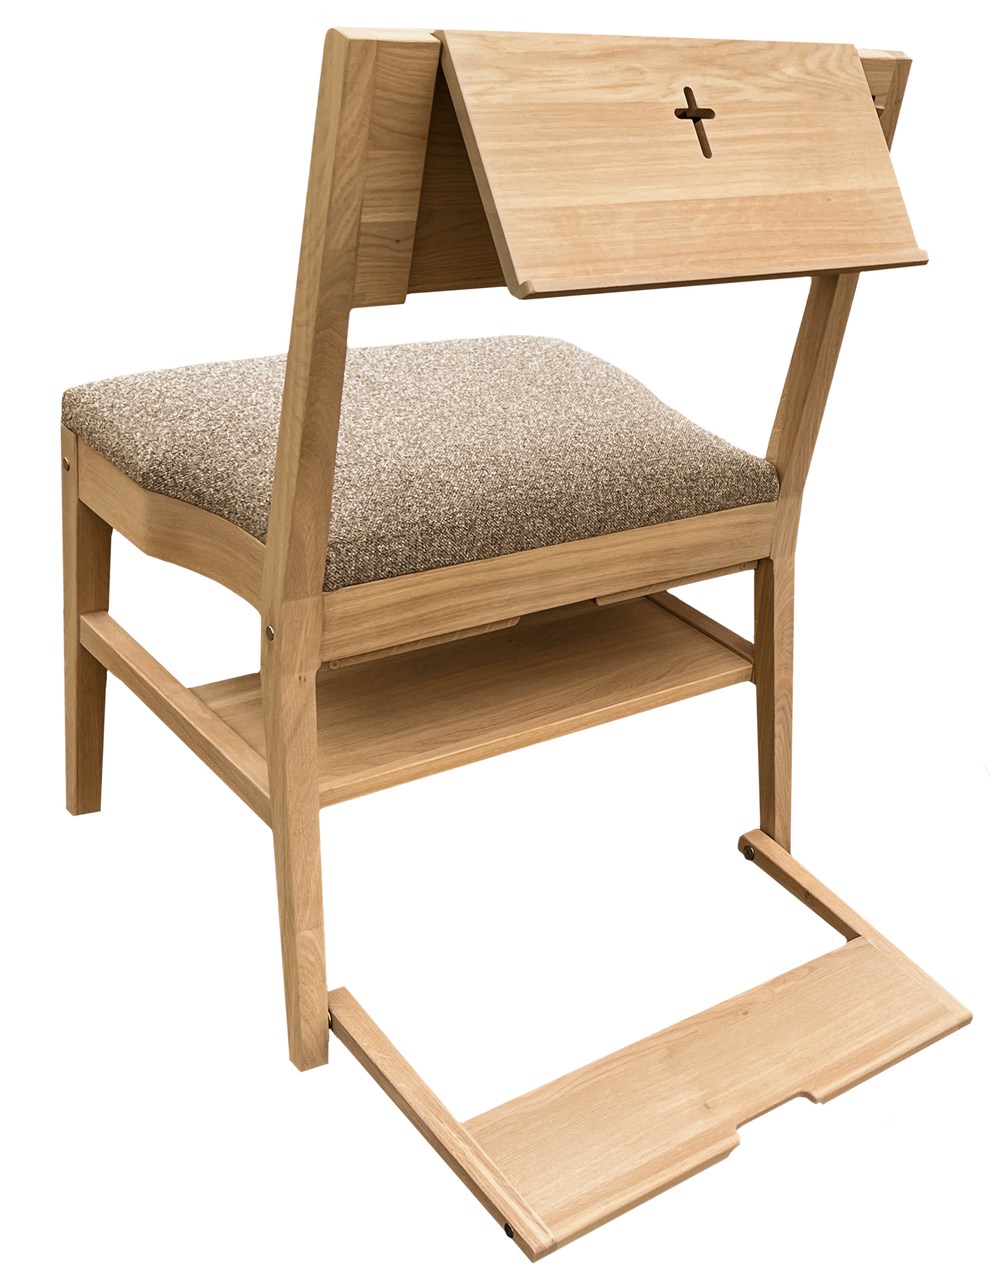 Chaise d'église en chêne ZOE avec une gamme complète d'accessoires — pupitre, crochet, genouillère, système de connexion, étagère sous le siège et rembourrage du siège